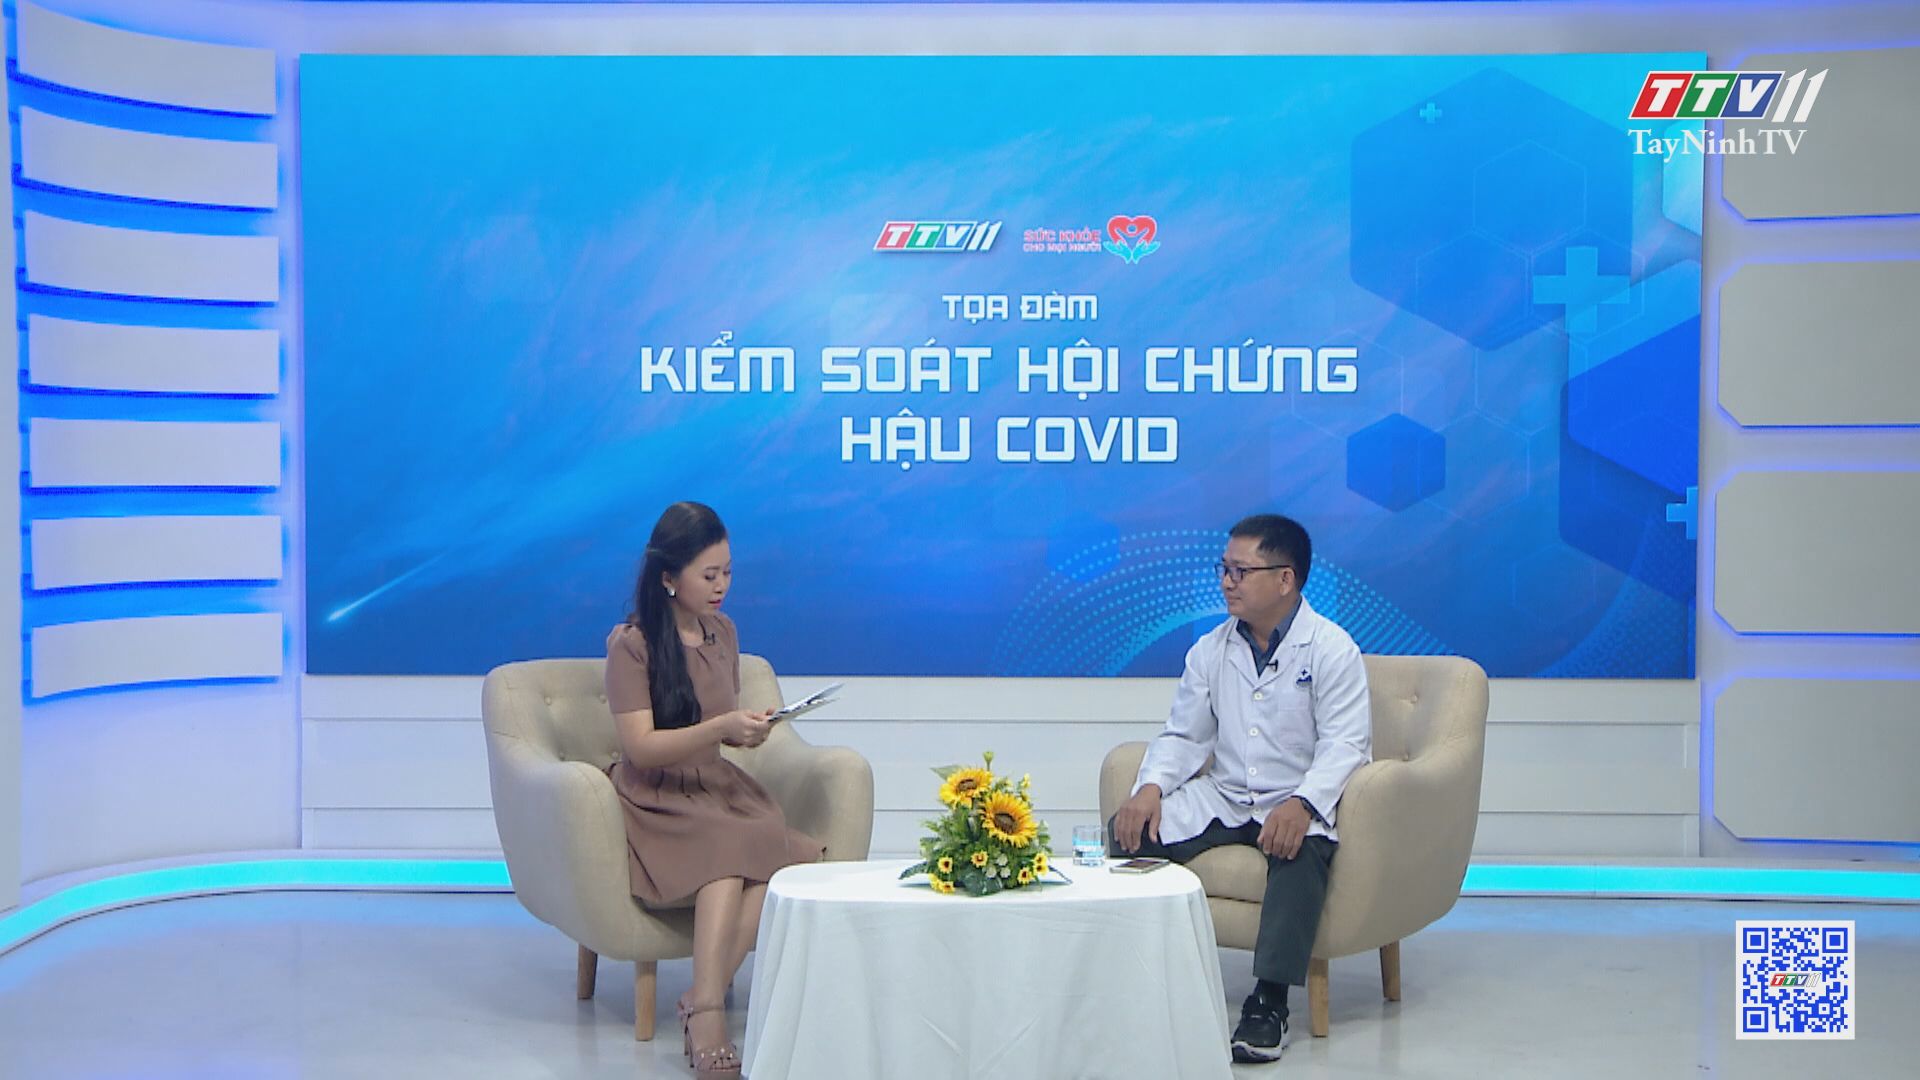 Kiểm soát hội chứng hậu Covid | SỨC KHỎE CHO MỌI NGƯỜI | TayNinhTV